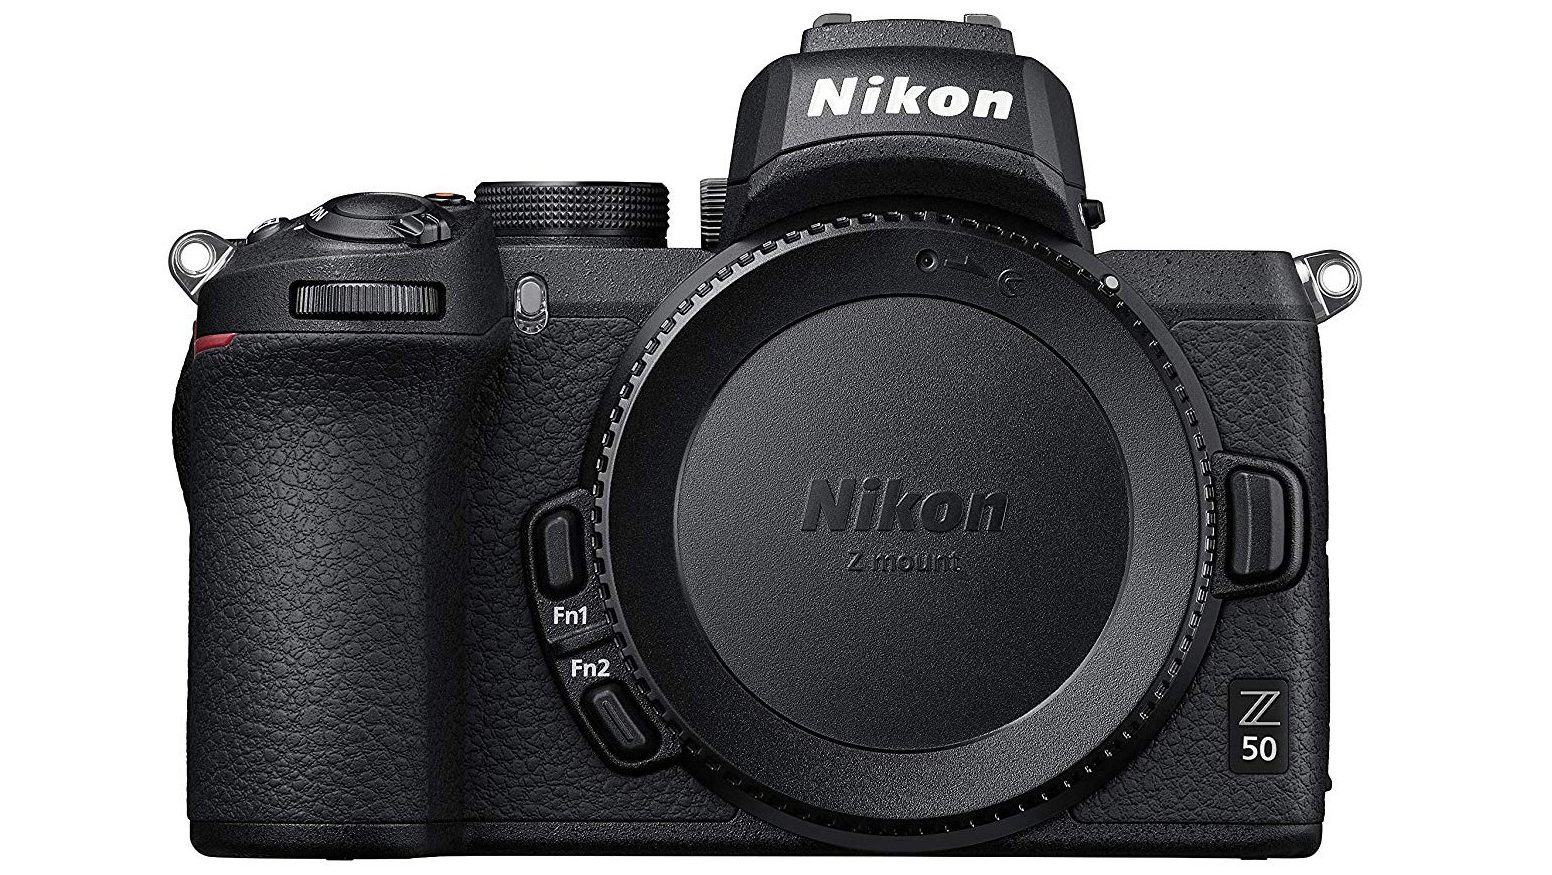 Nikon Z50 camera body